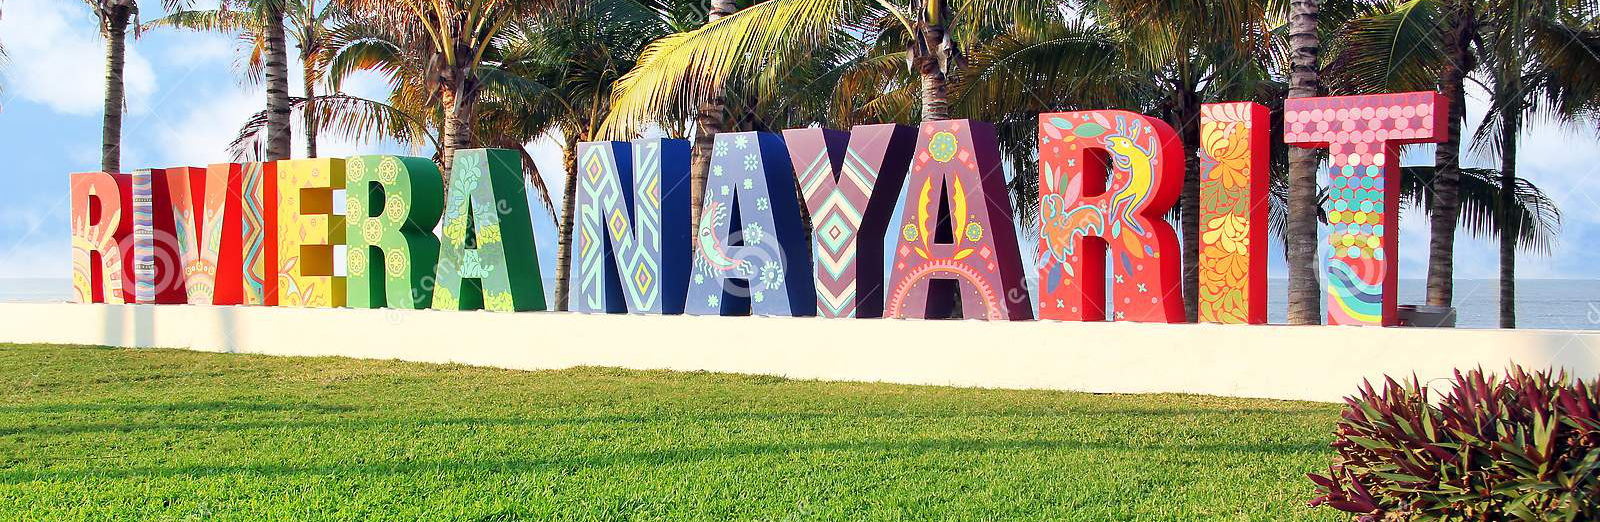 Riviera Nayarit Mexico colorful sign